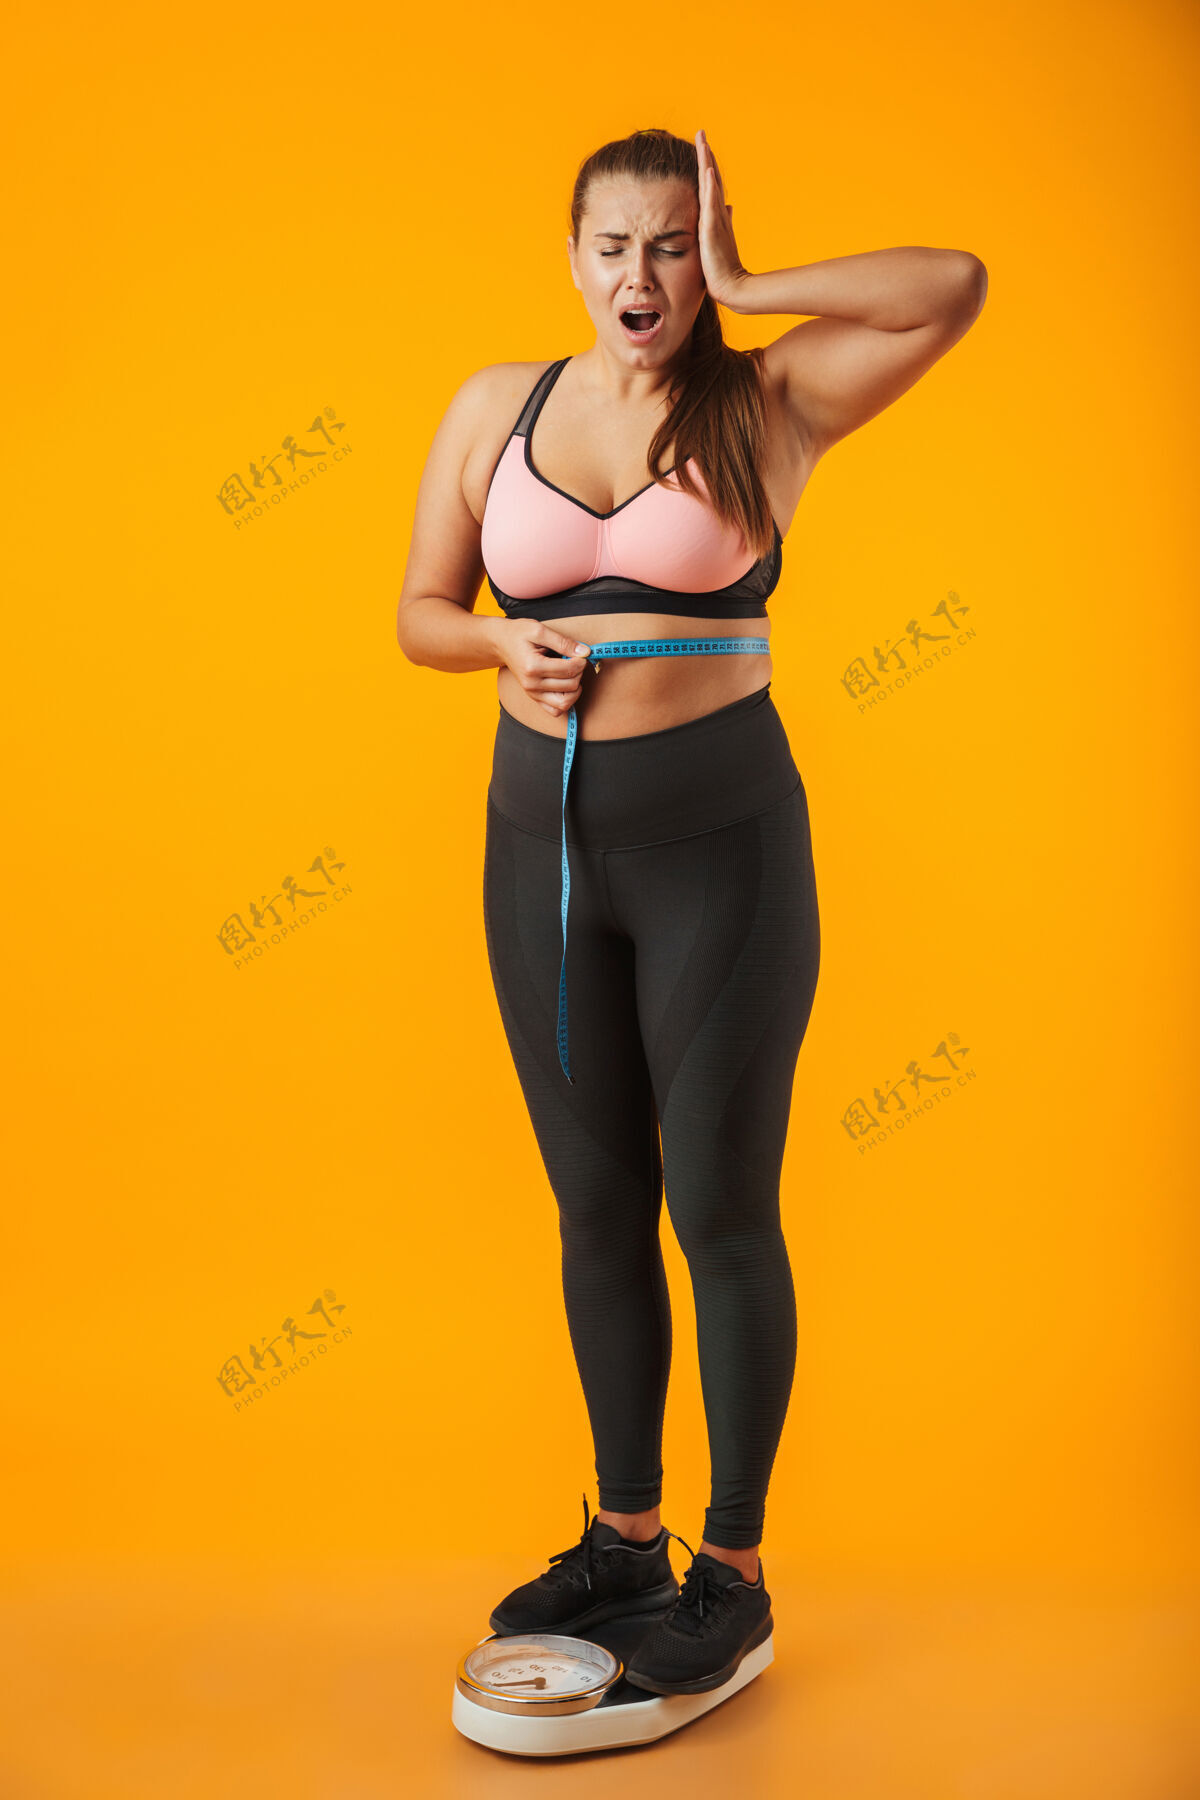 表情一个心烦意乱的超重的年轻女子穿着运动服站在黄色墙壁上 腰间拿着卷尺的全长肖像惊讶身体成就